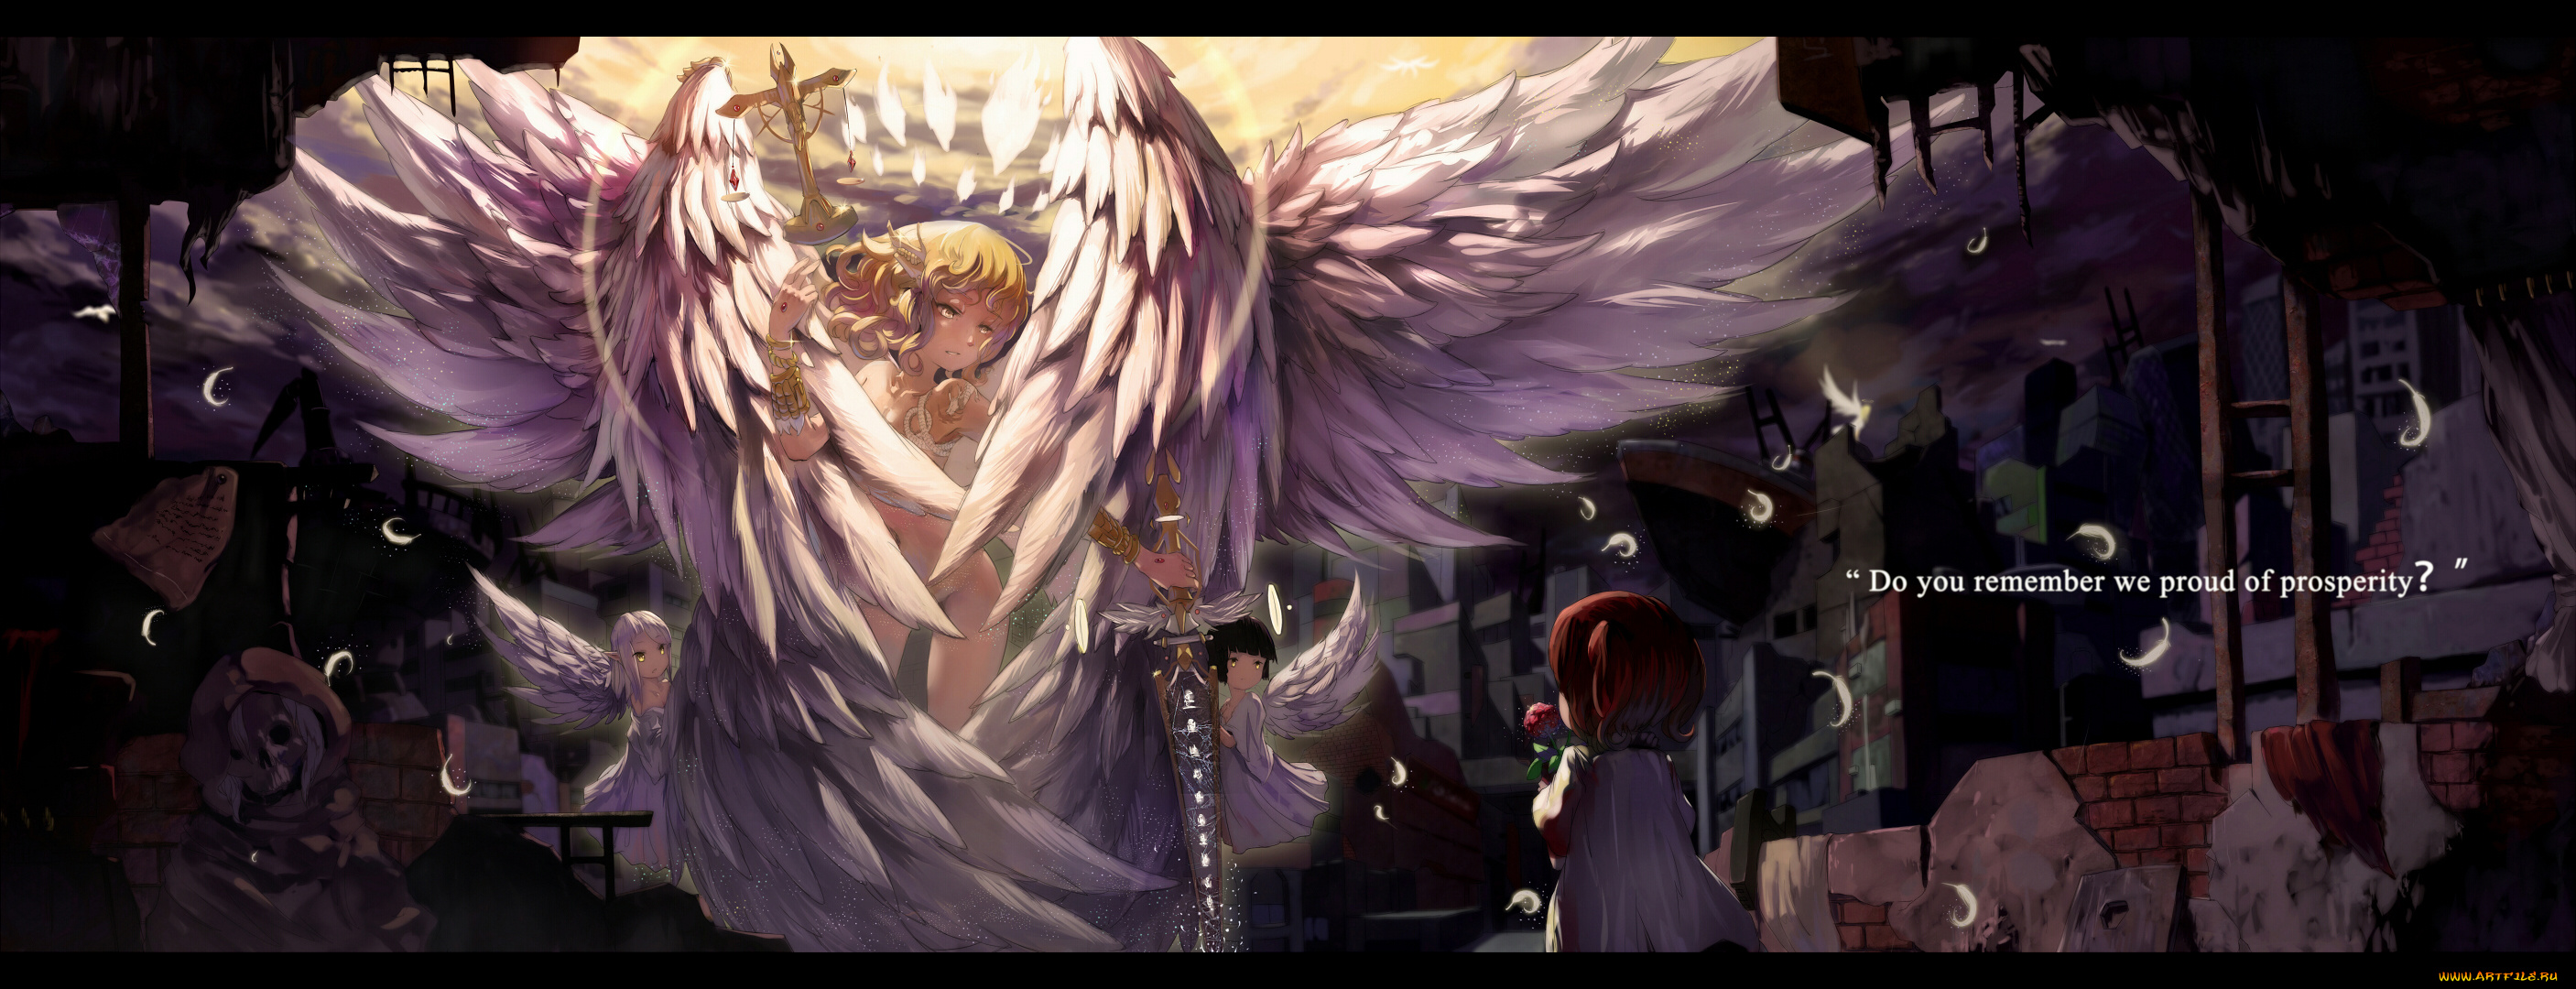 аниме, -angels, &, demons, развялины, город, фея, ребенок, свет, облака, крылья, нимб, ангел, девушка, цветок, перья, небо, весы, меч, скелет, труп